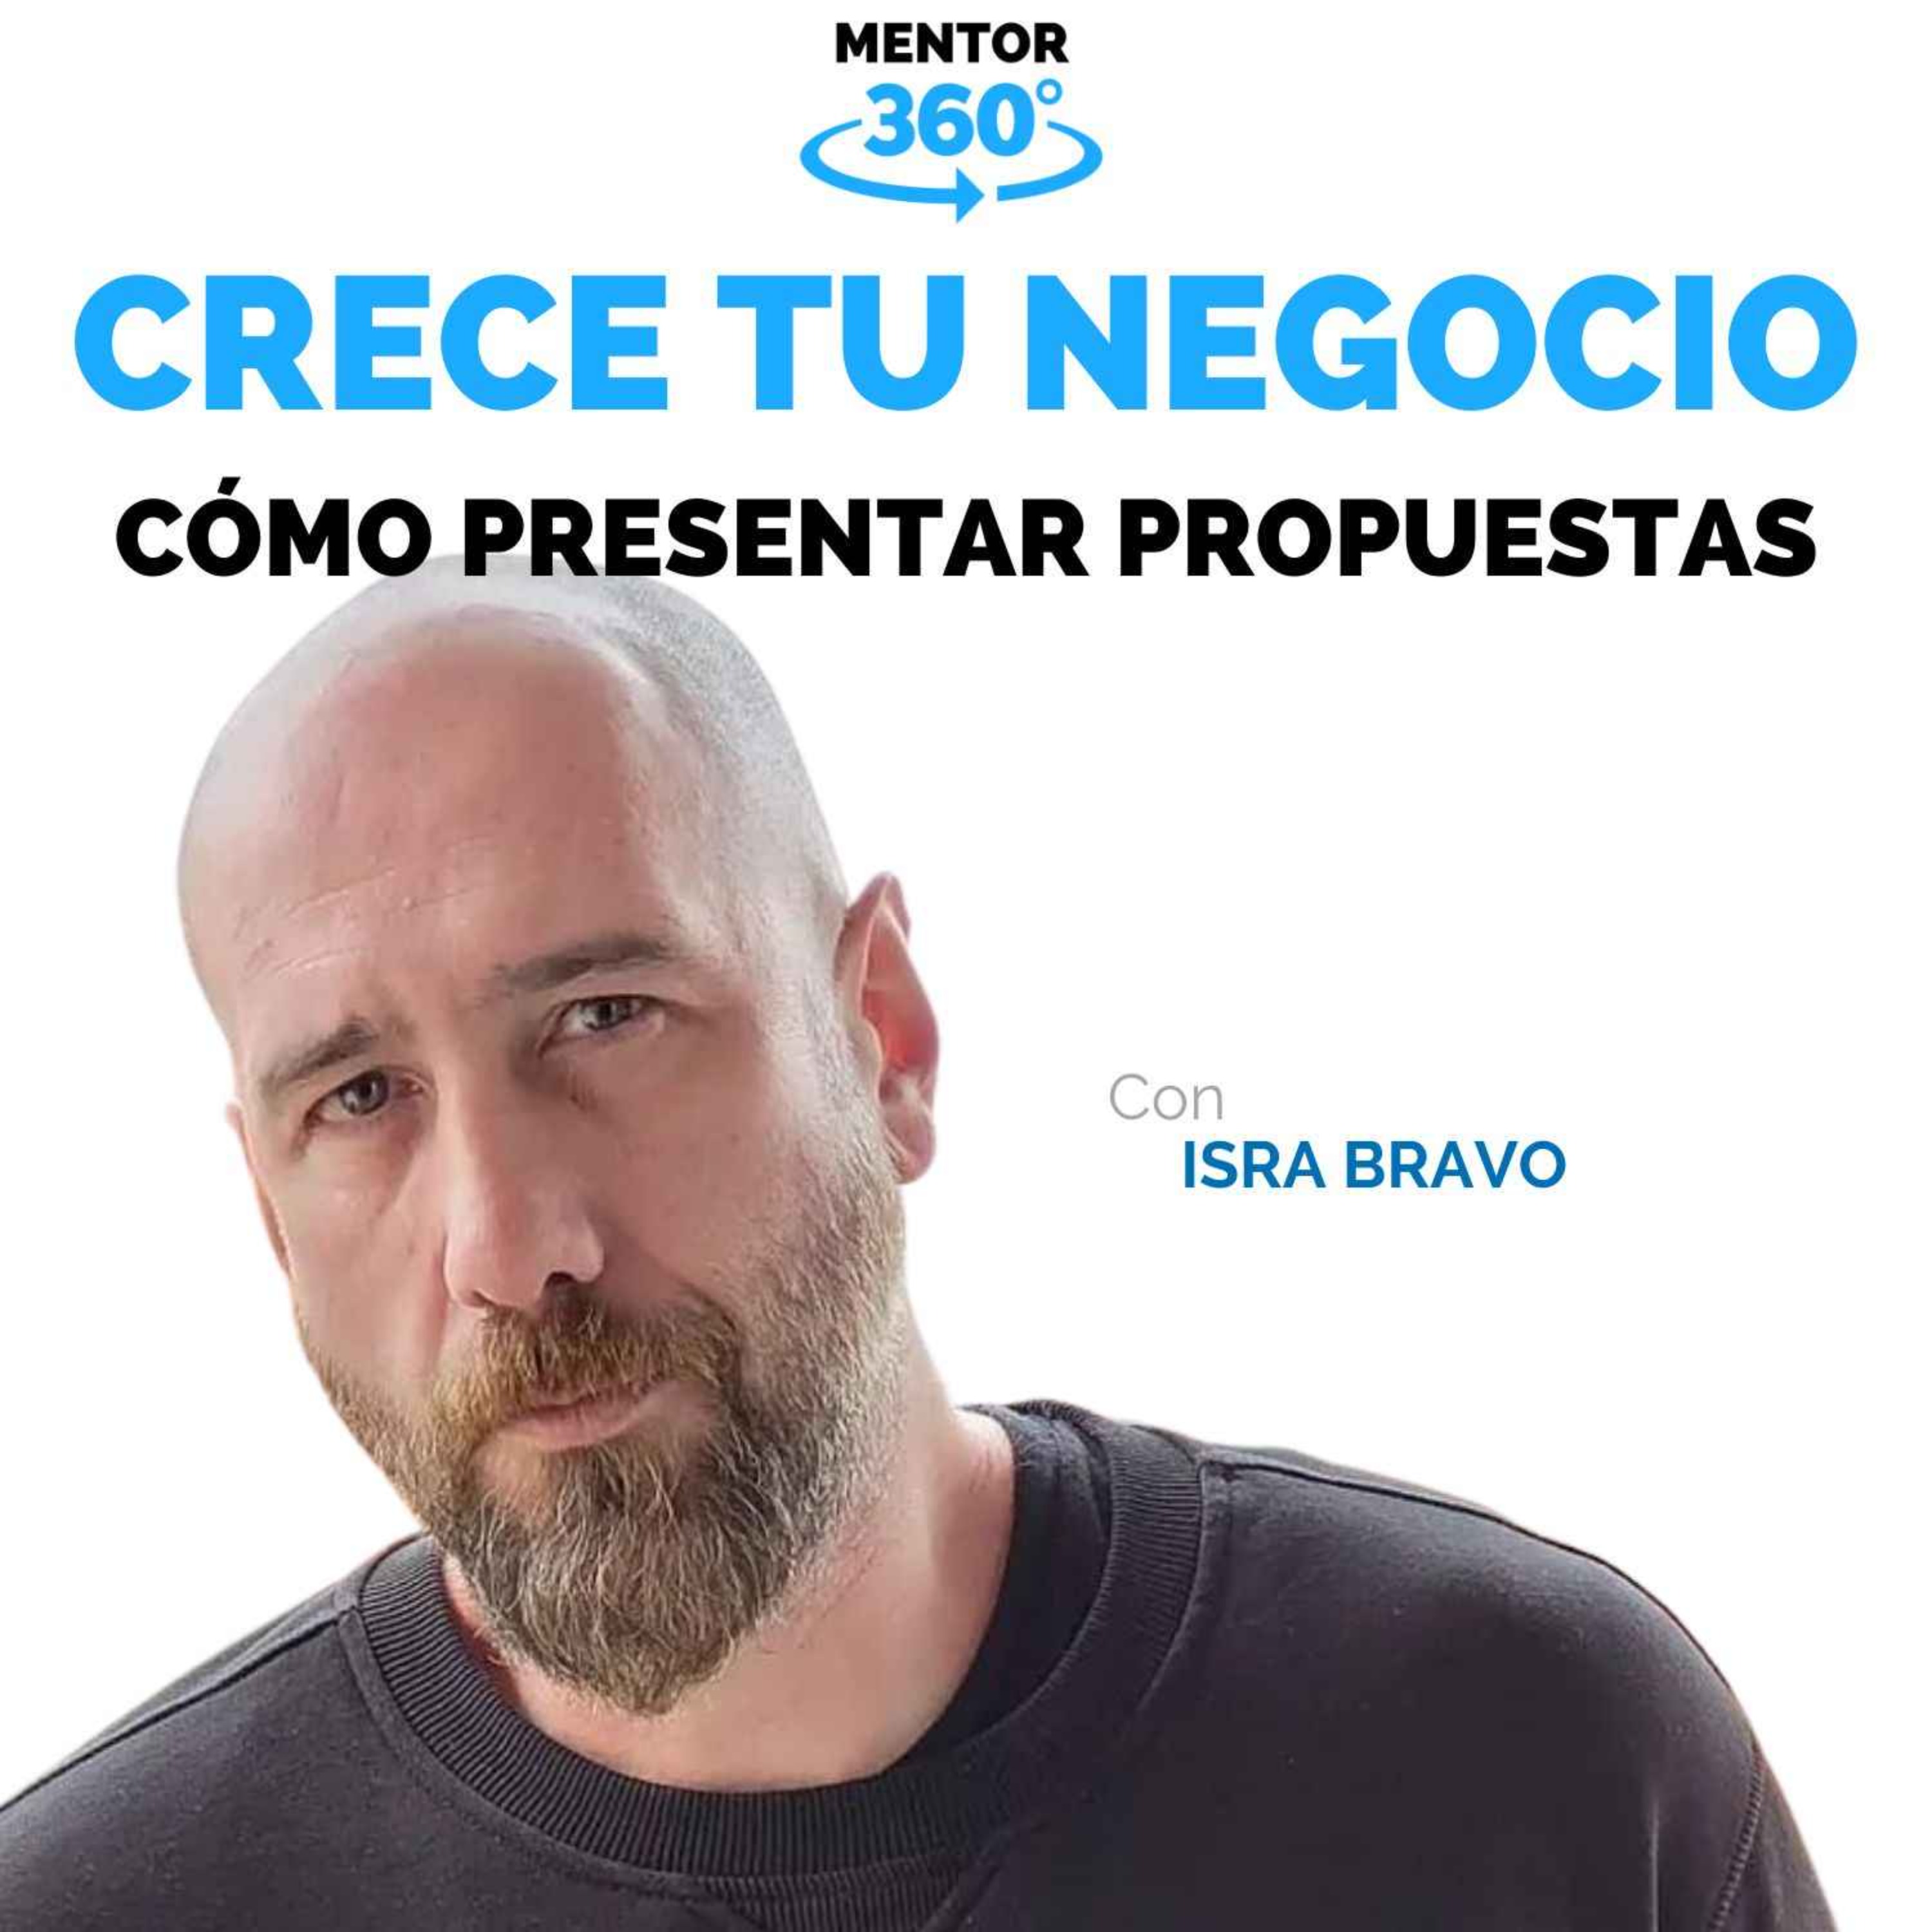 Cómo Presentar Propuestas - Isra Bravo - Crece Tu Negocio - MENTOR360